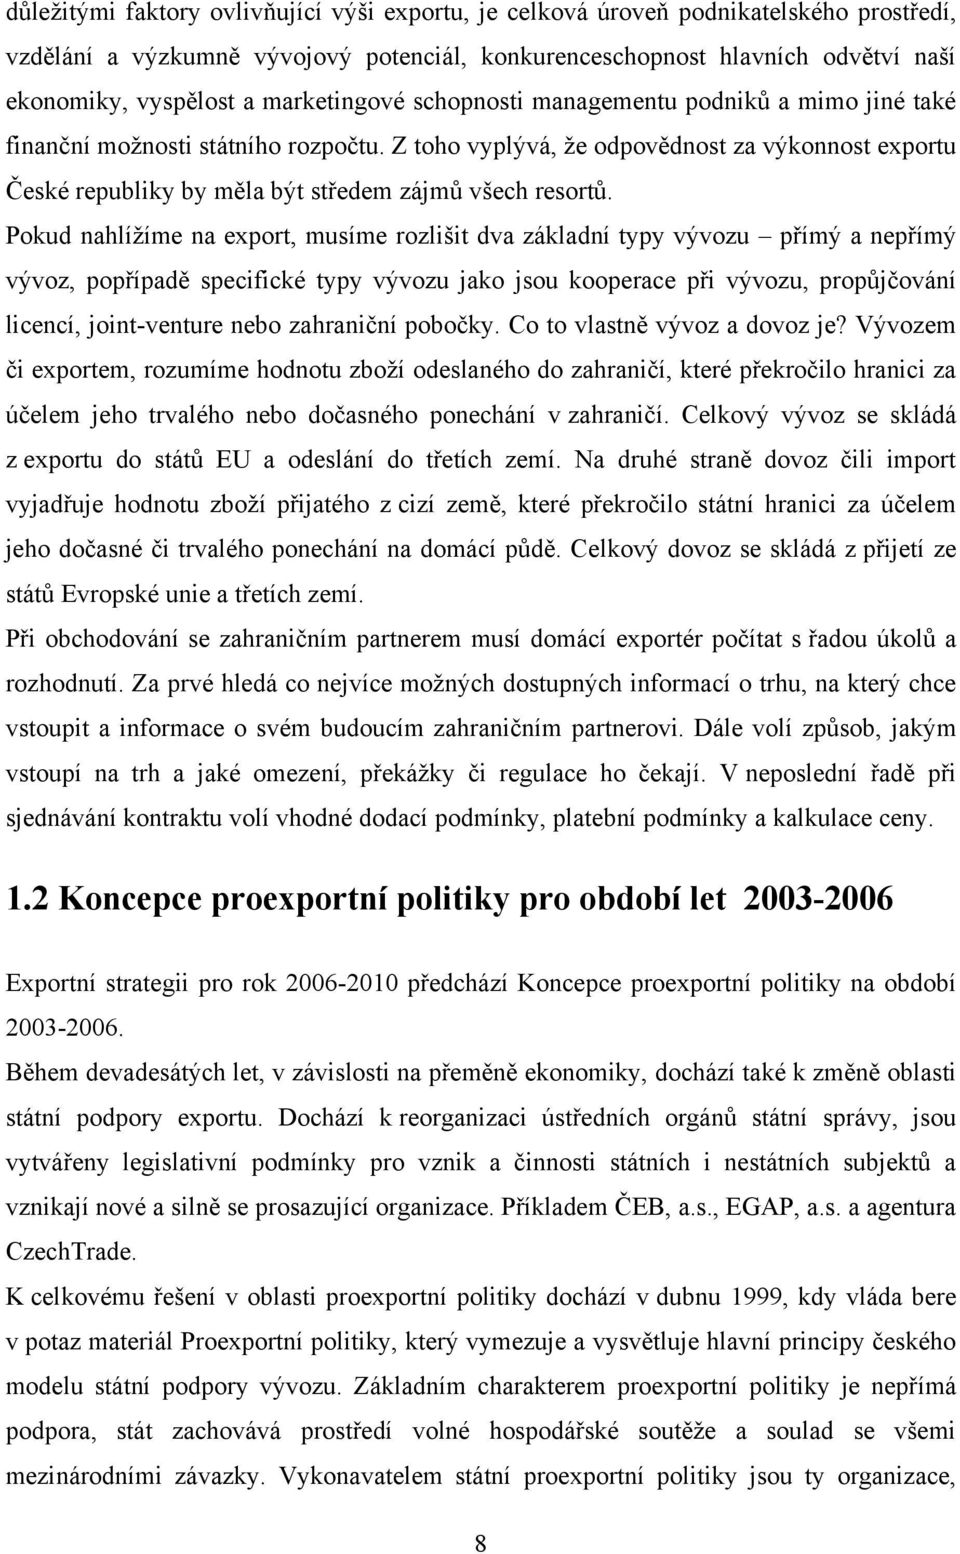 Z toho vyplývá, že odpovědnost za výkonnost exportu České republiky by měla být středem zájmů všech resortů.